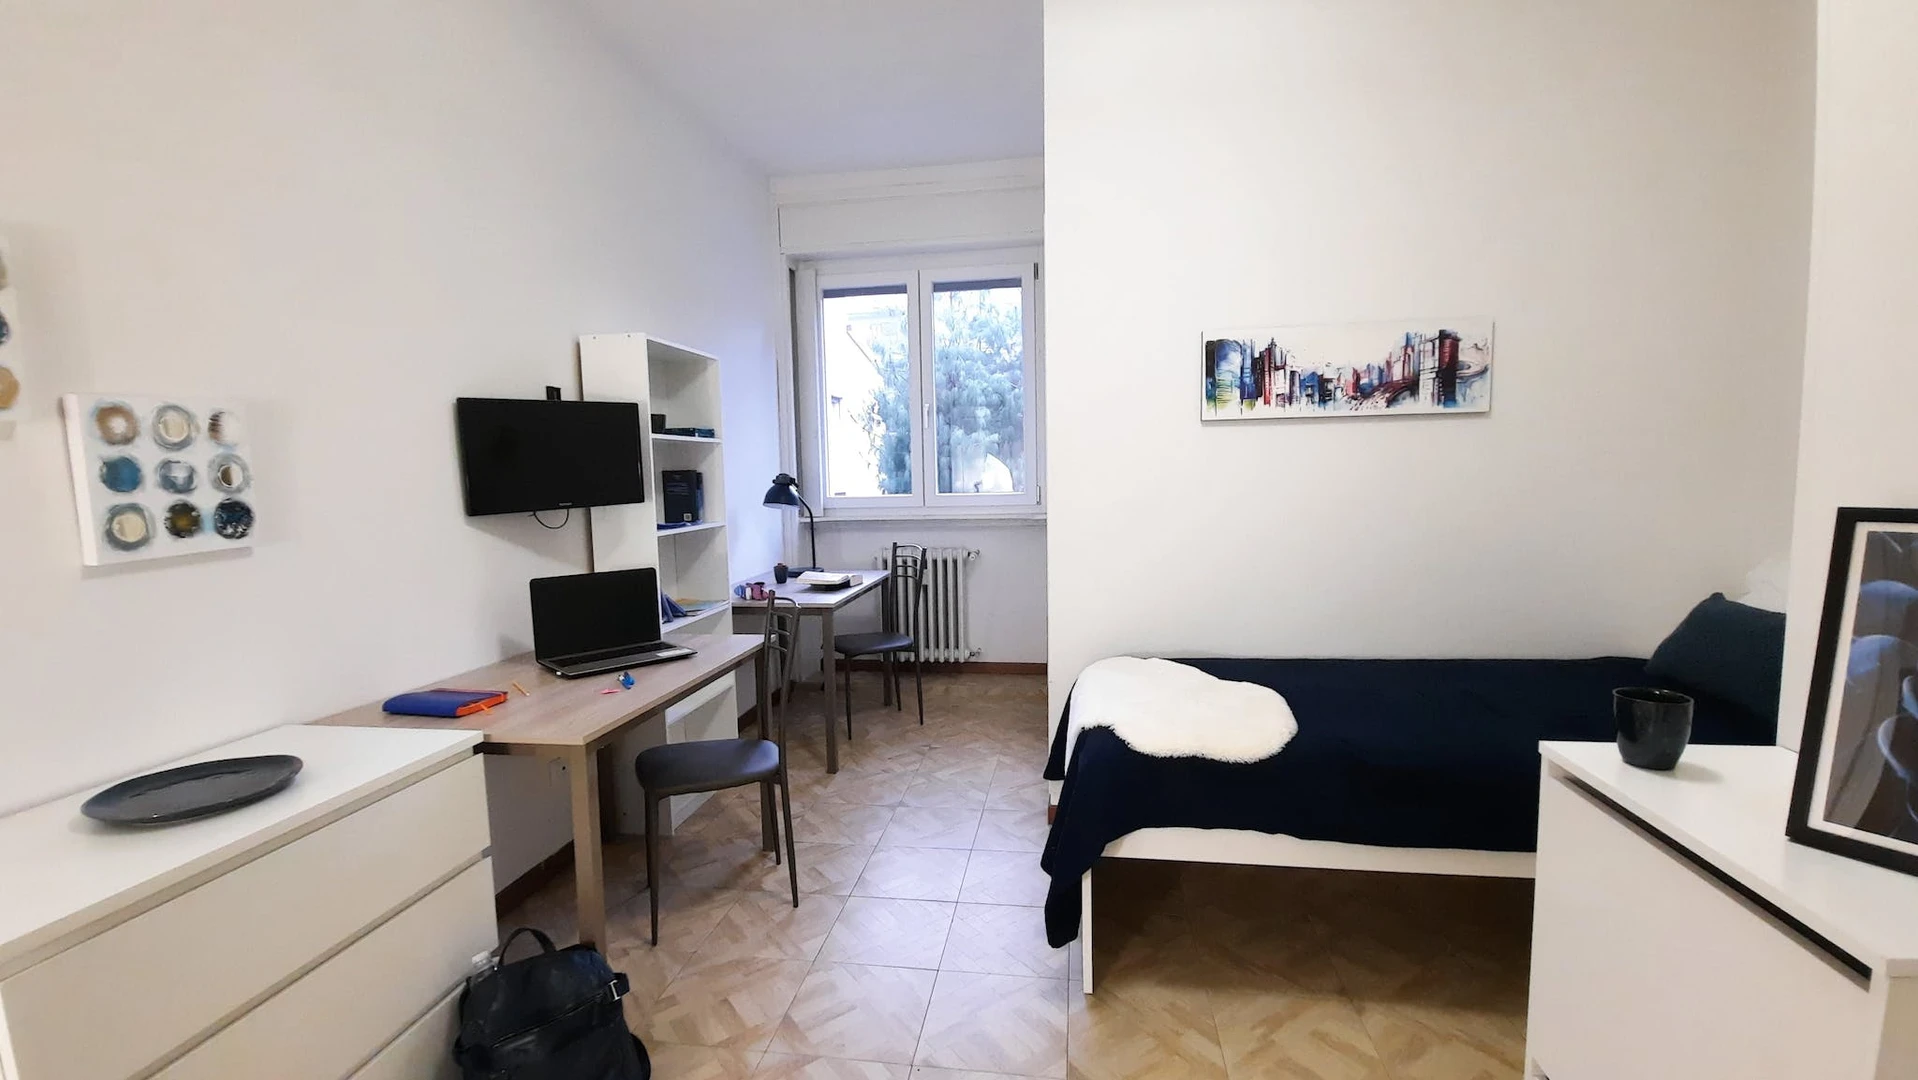 Habitación compartida con otro estudiante en Bérgamo